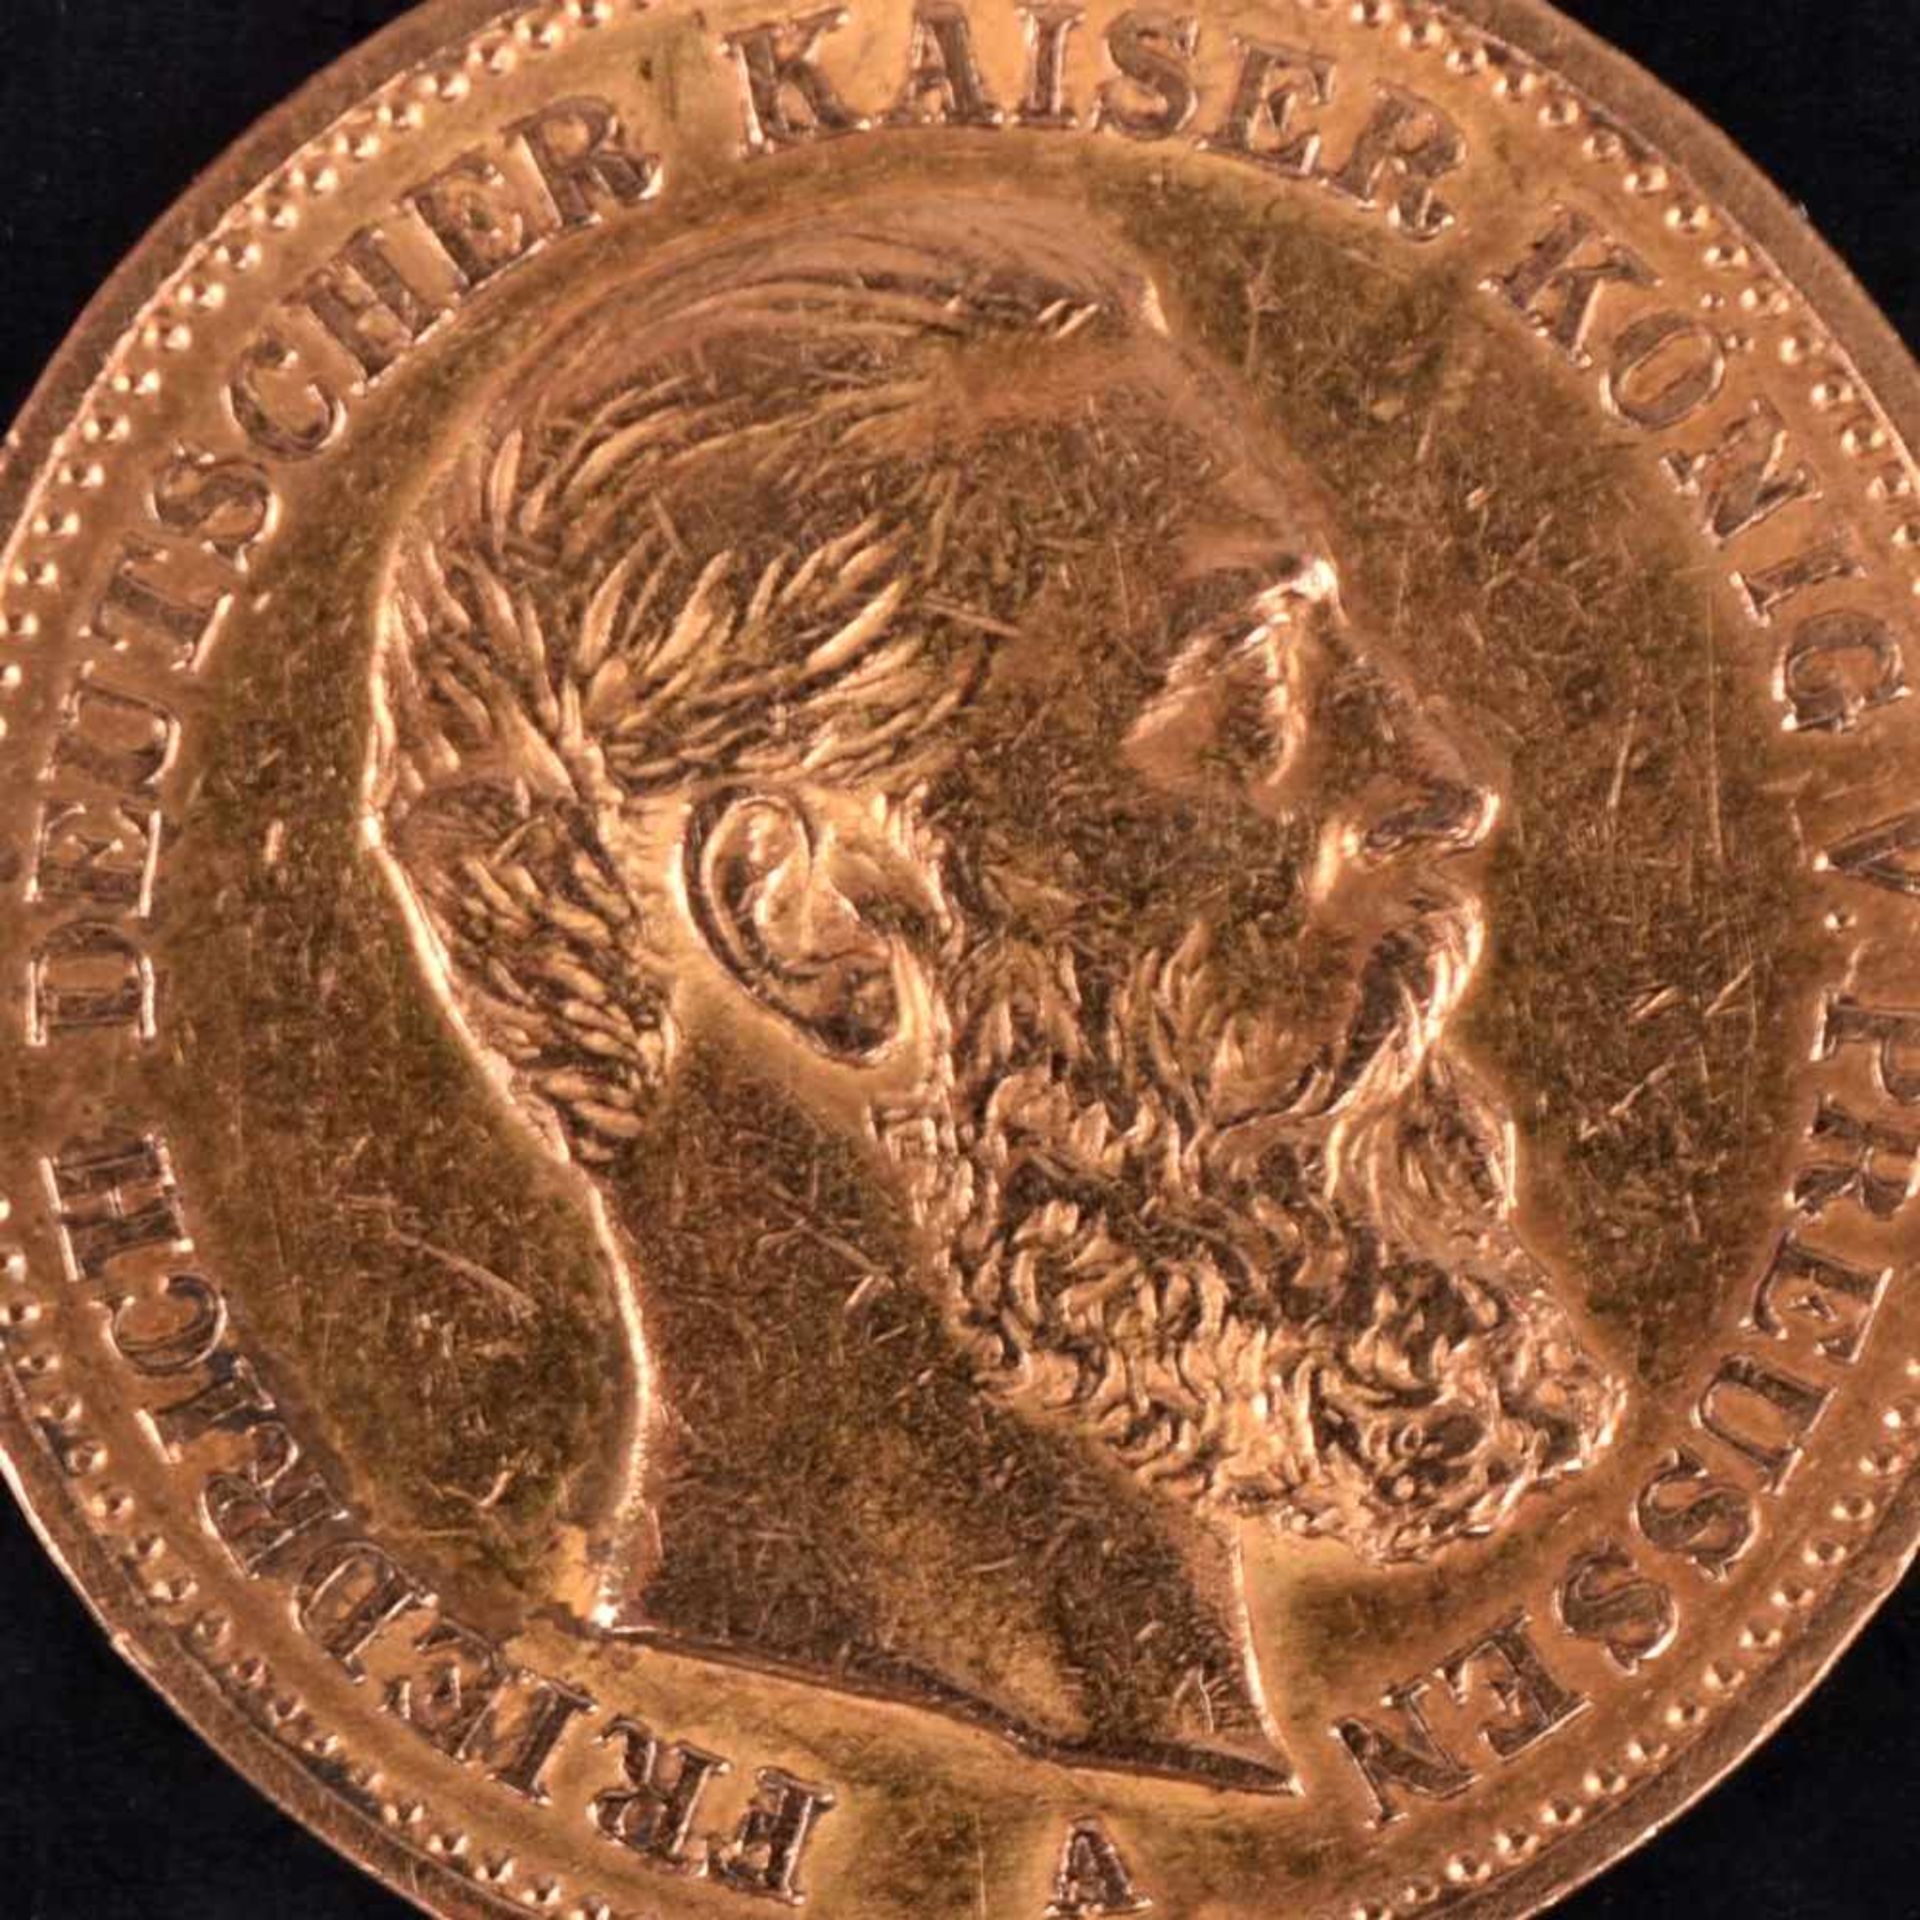 Goldmünze Kaiserreich - Preußen 1888 20 Mark in Gold, 900/1000, 7,96 g, av. Friedrich Deutscher